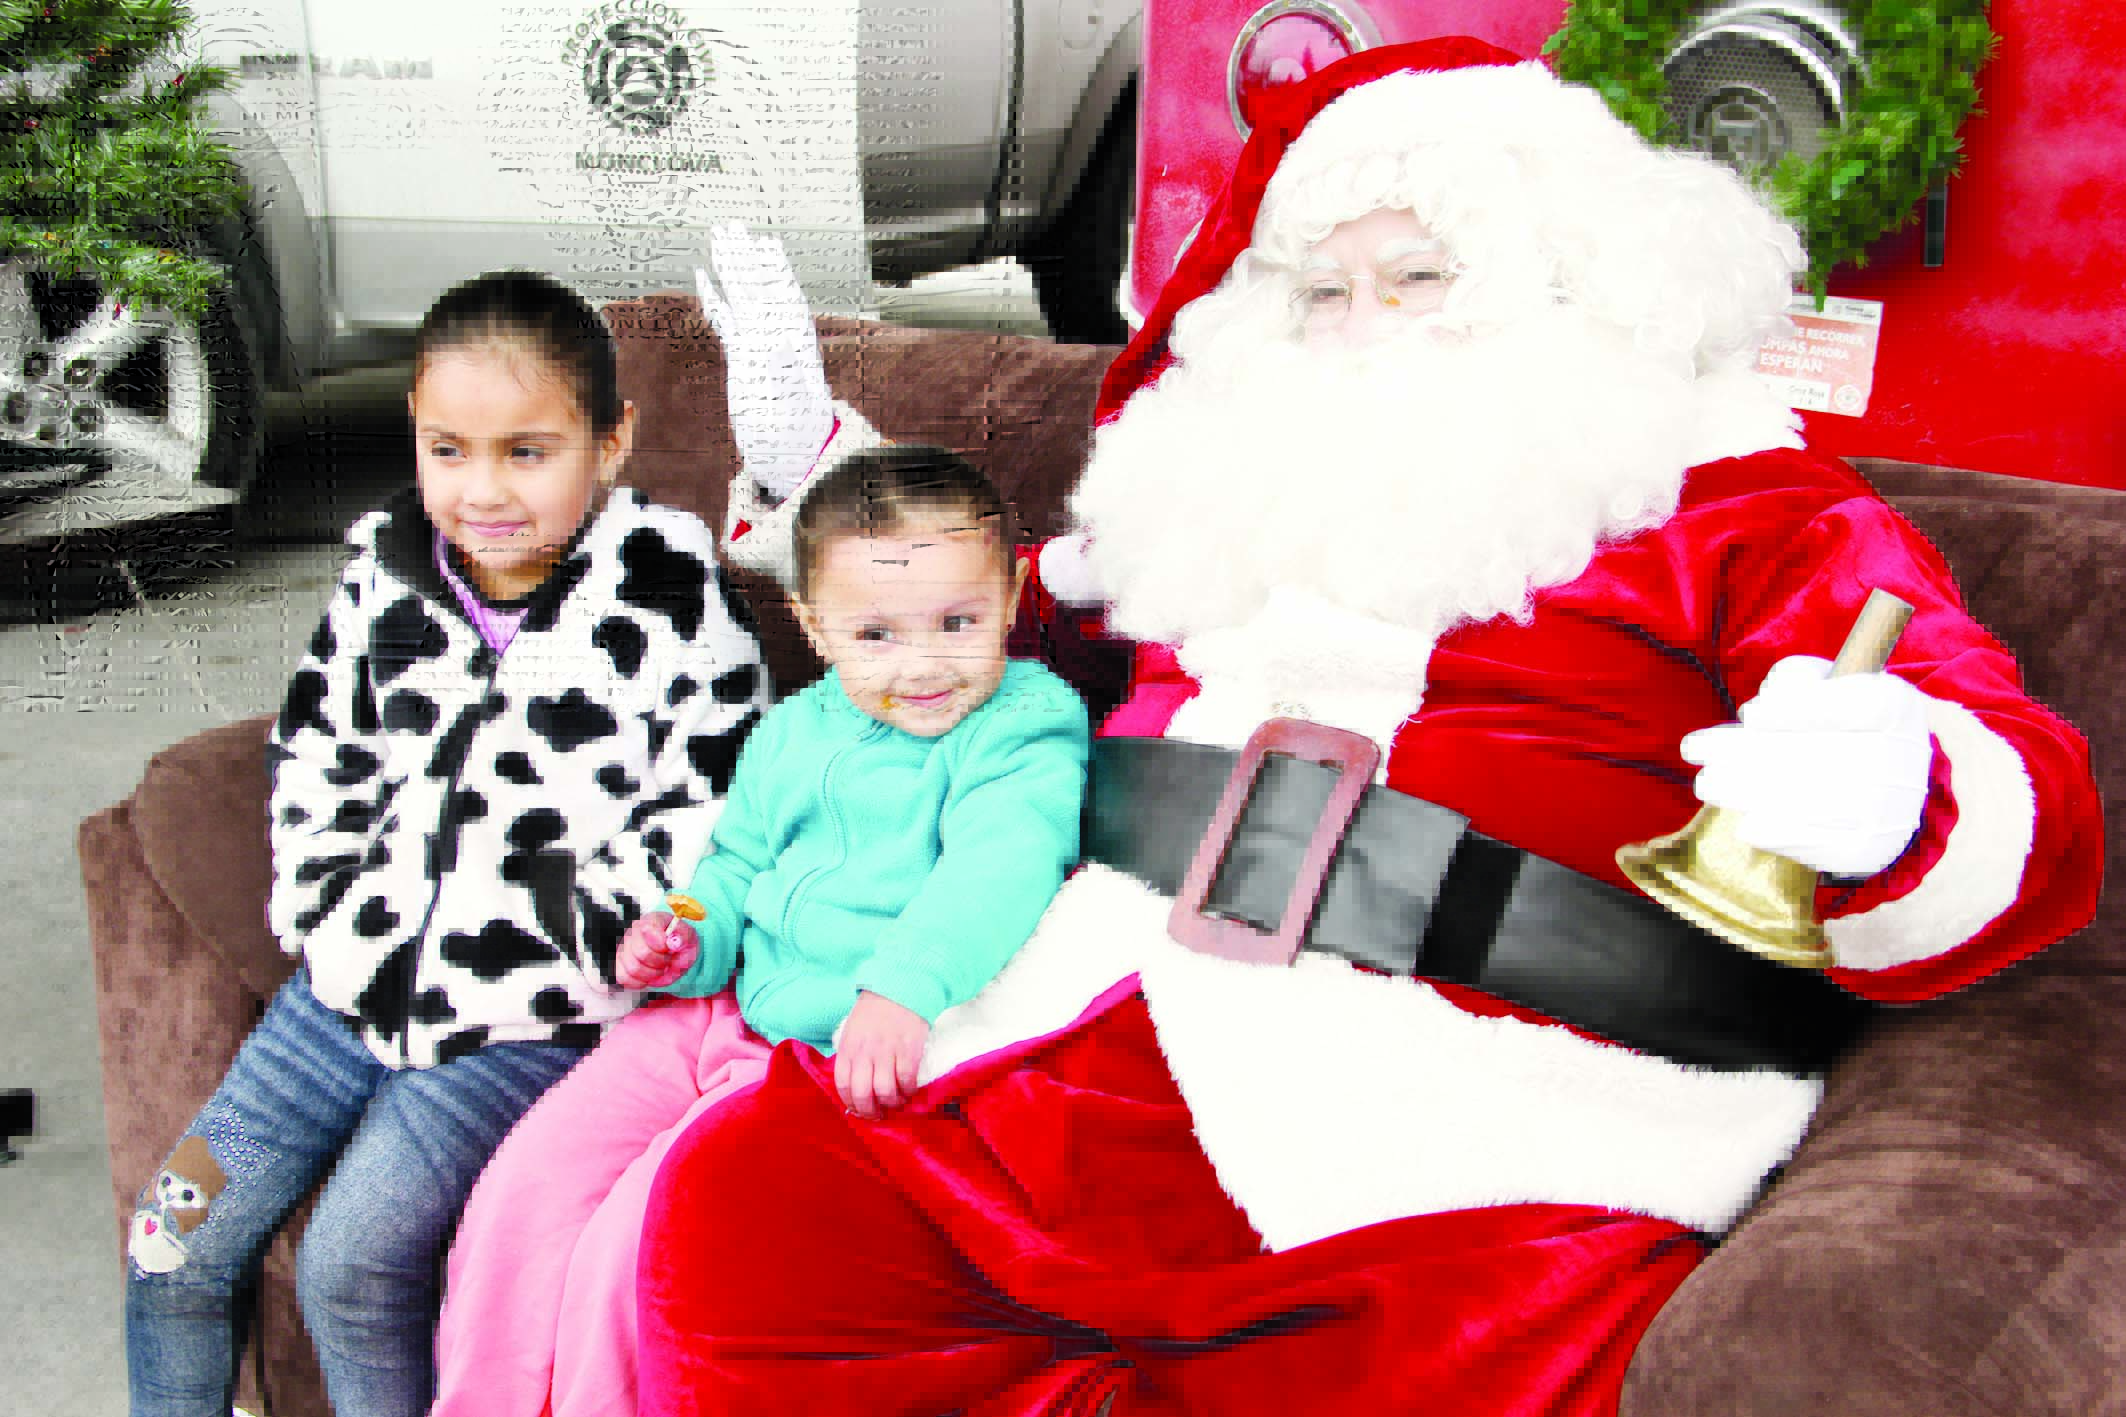 Visitan niños a Santa Claus